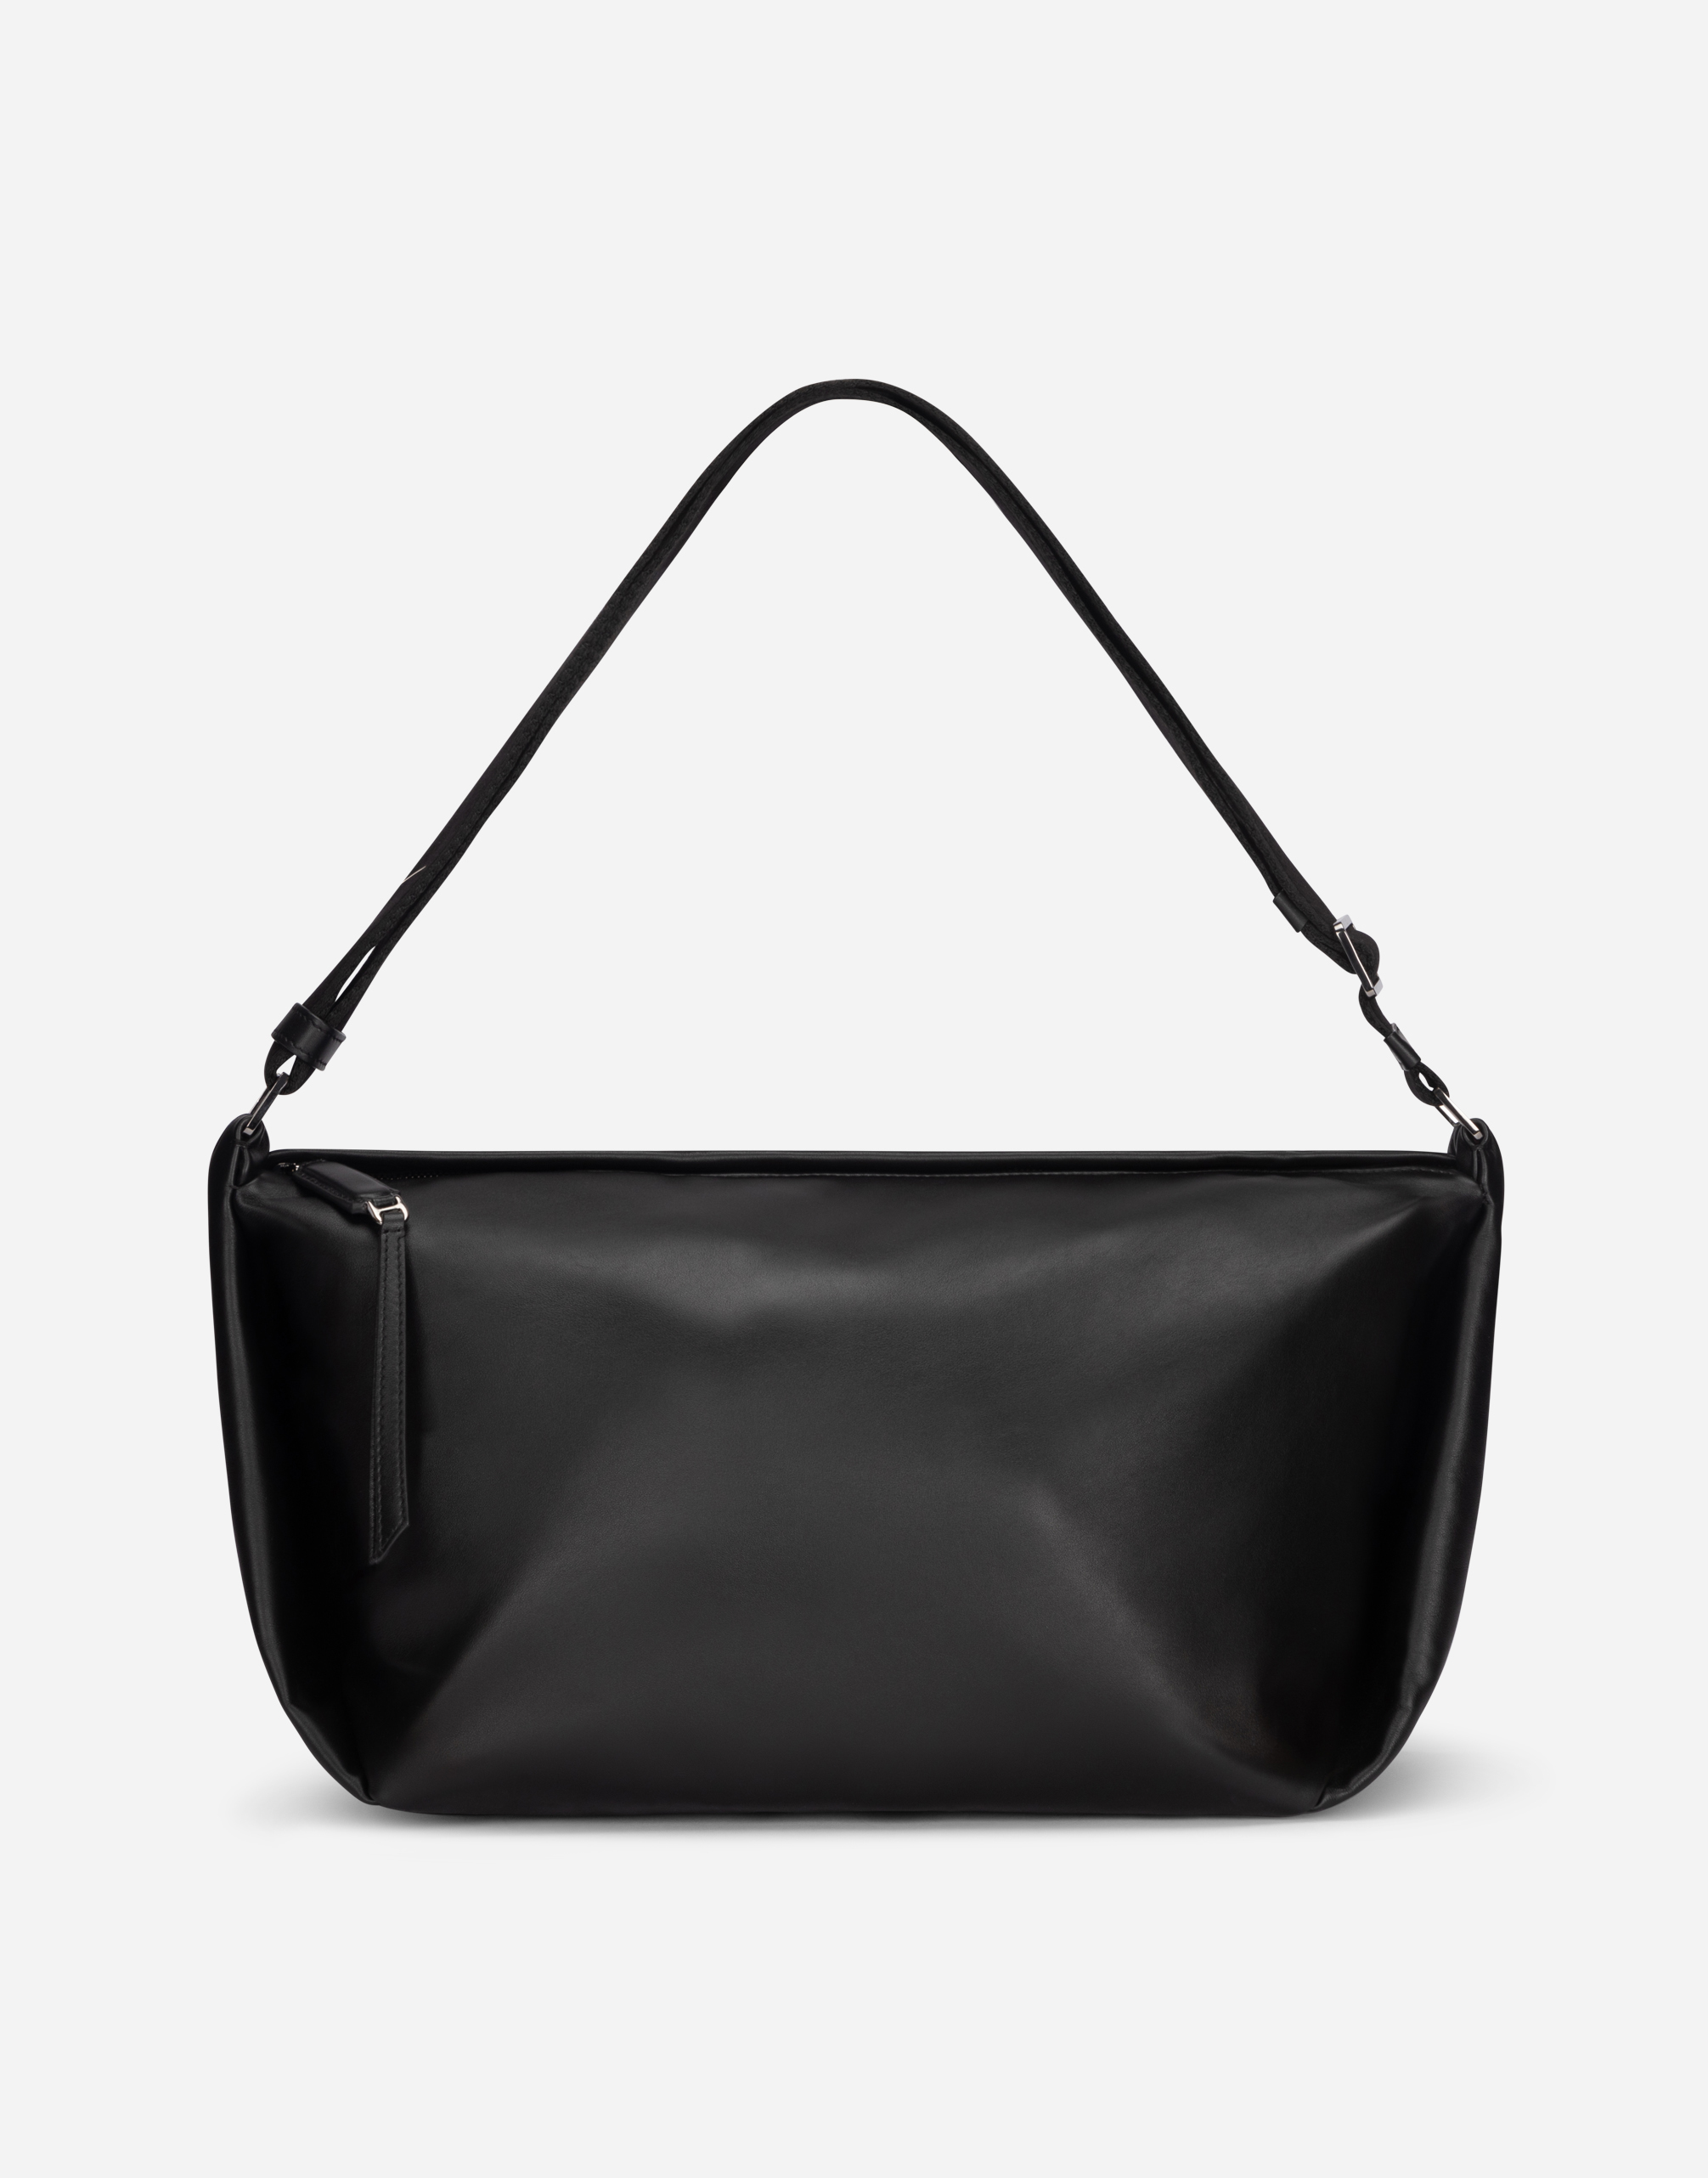 Dolce & Gabbana Calfskin Soft Bag In Black